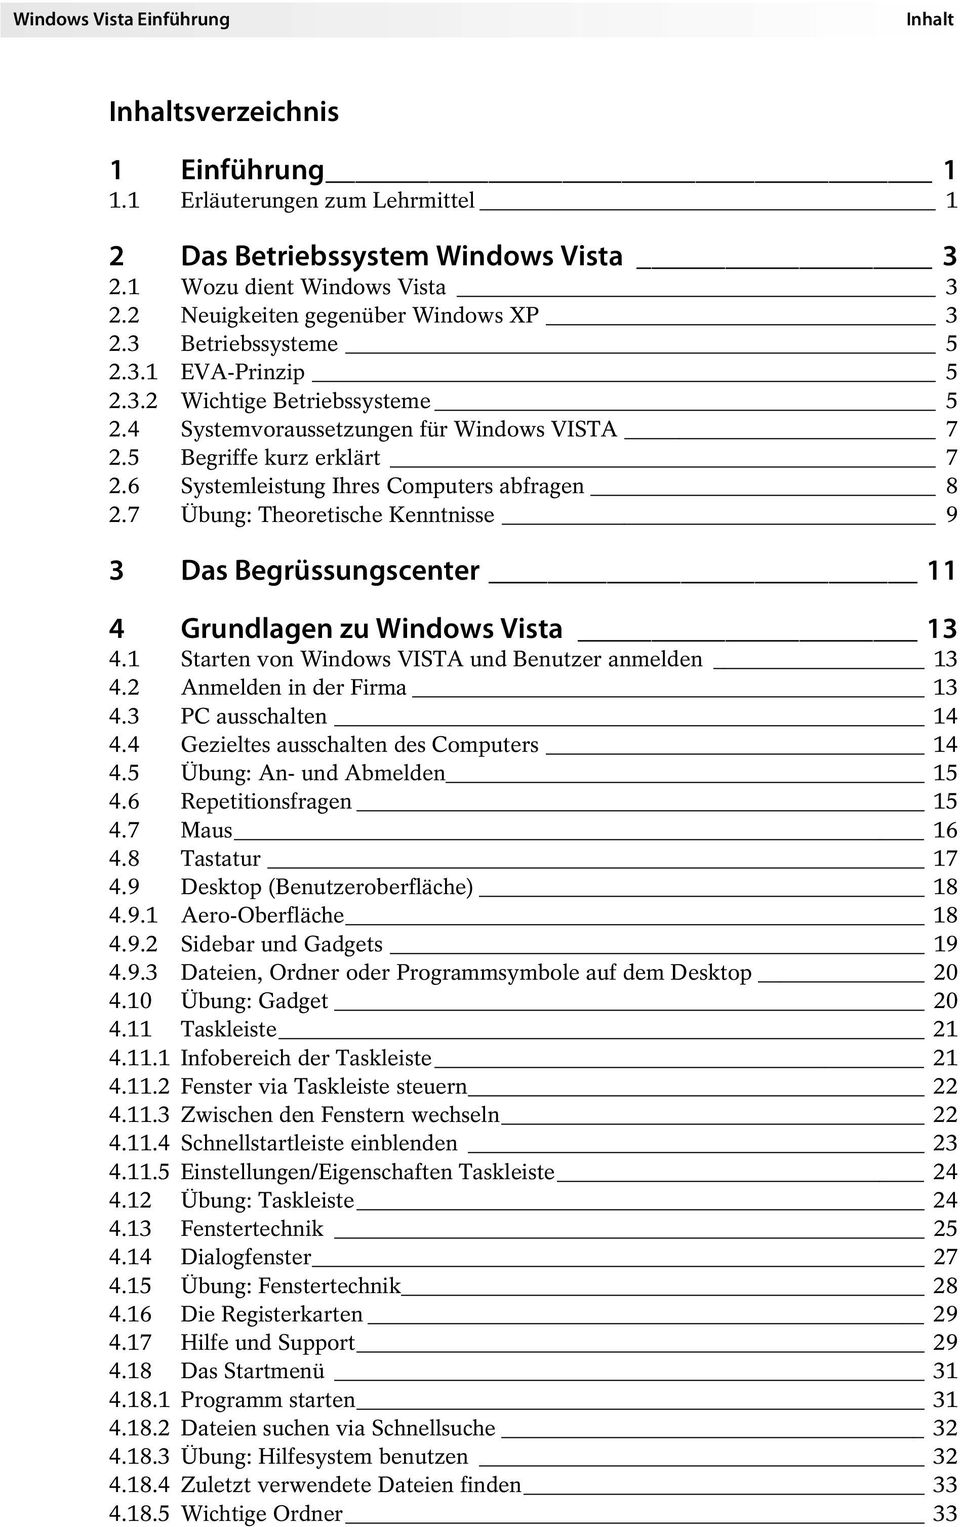 6 Systemleistung Ihres Computers abfragen 8 2.7 Übung: Theoretische Kenntnisse 9 3 Das Begrüssungscenter 11 4 Grundlagen zu Windows Vista 13 4.1 Starten von Windows VISTA und Benutzer anmelden 13 4.